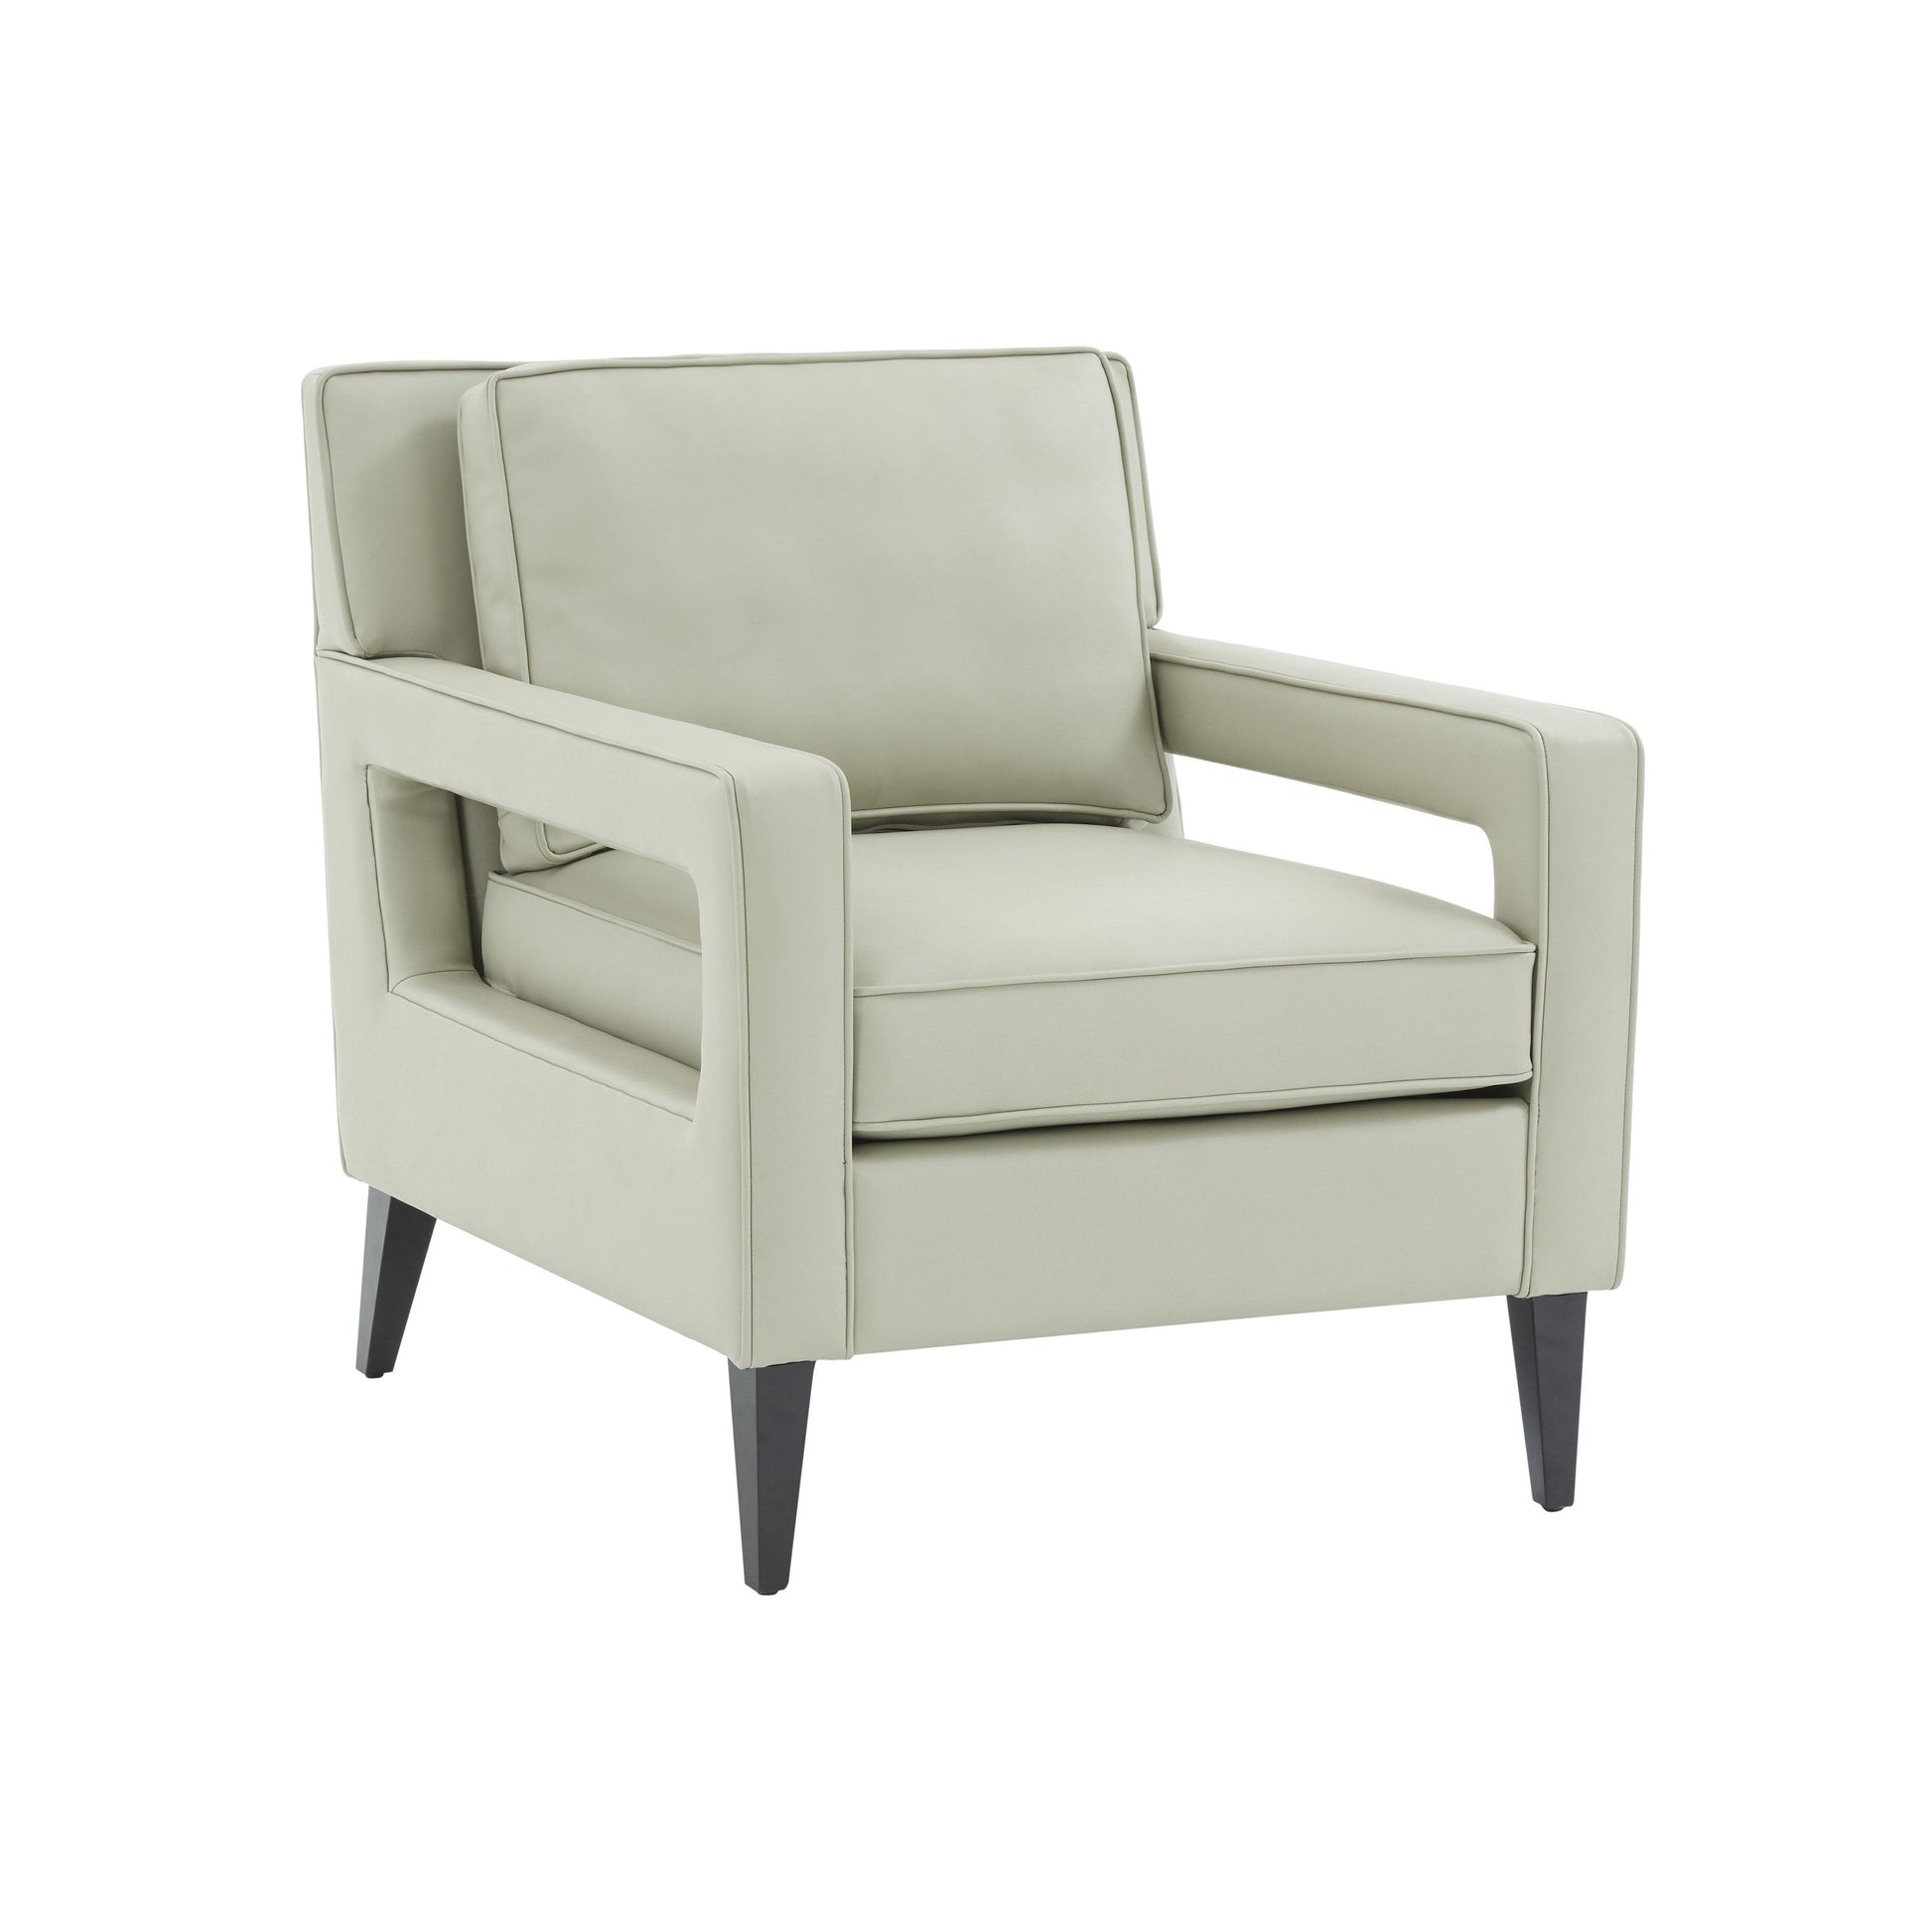 Tov Furniture Luna Stone Gray Accent Chair